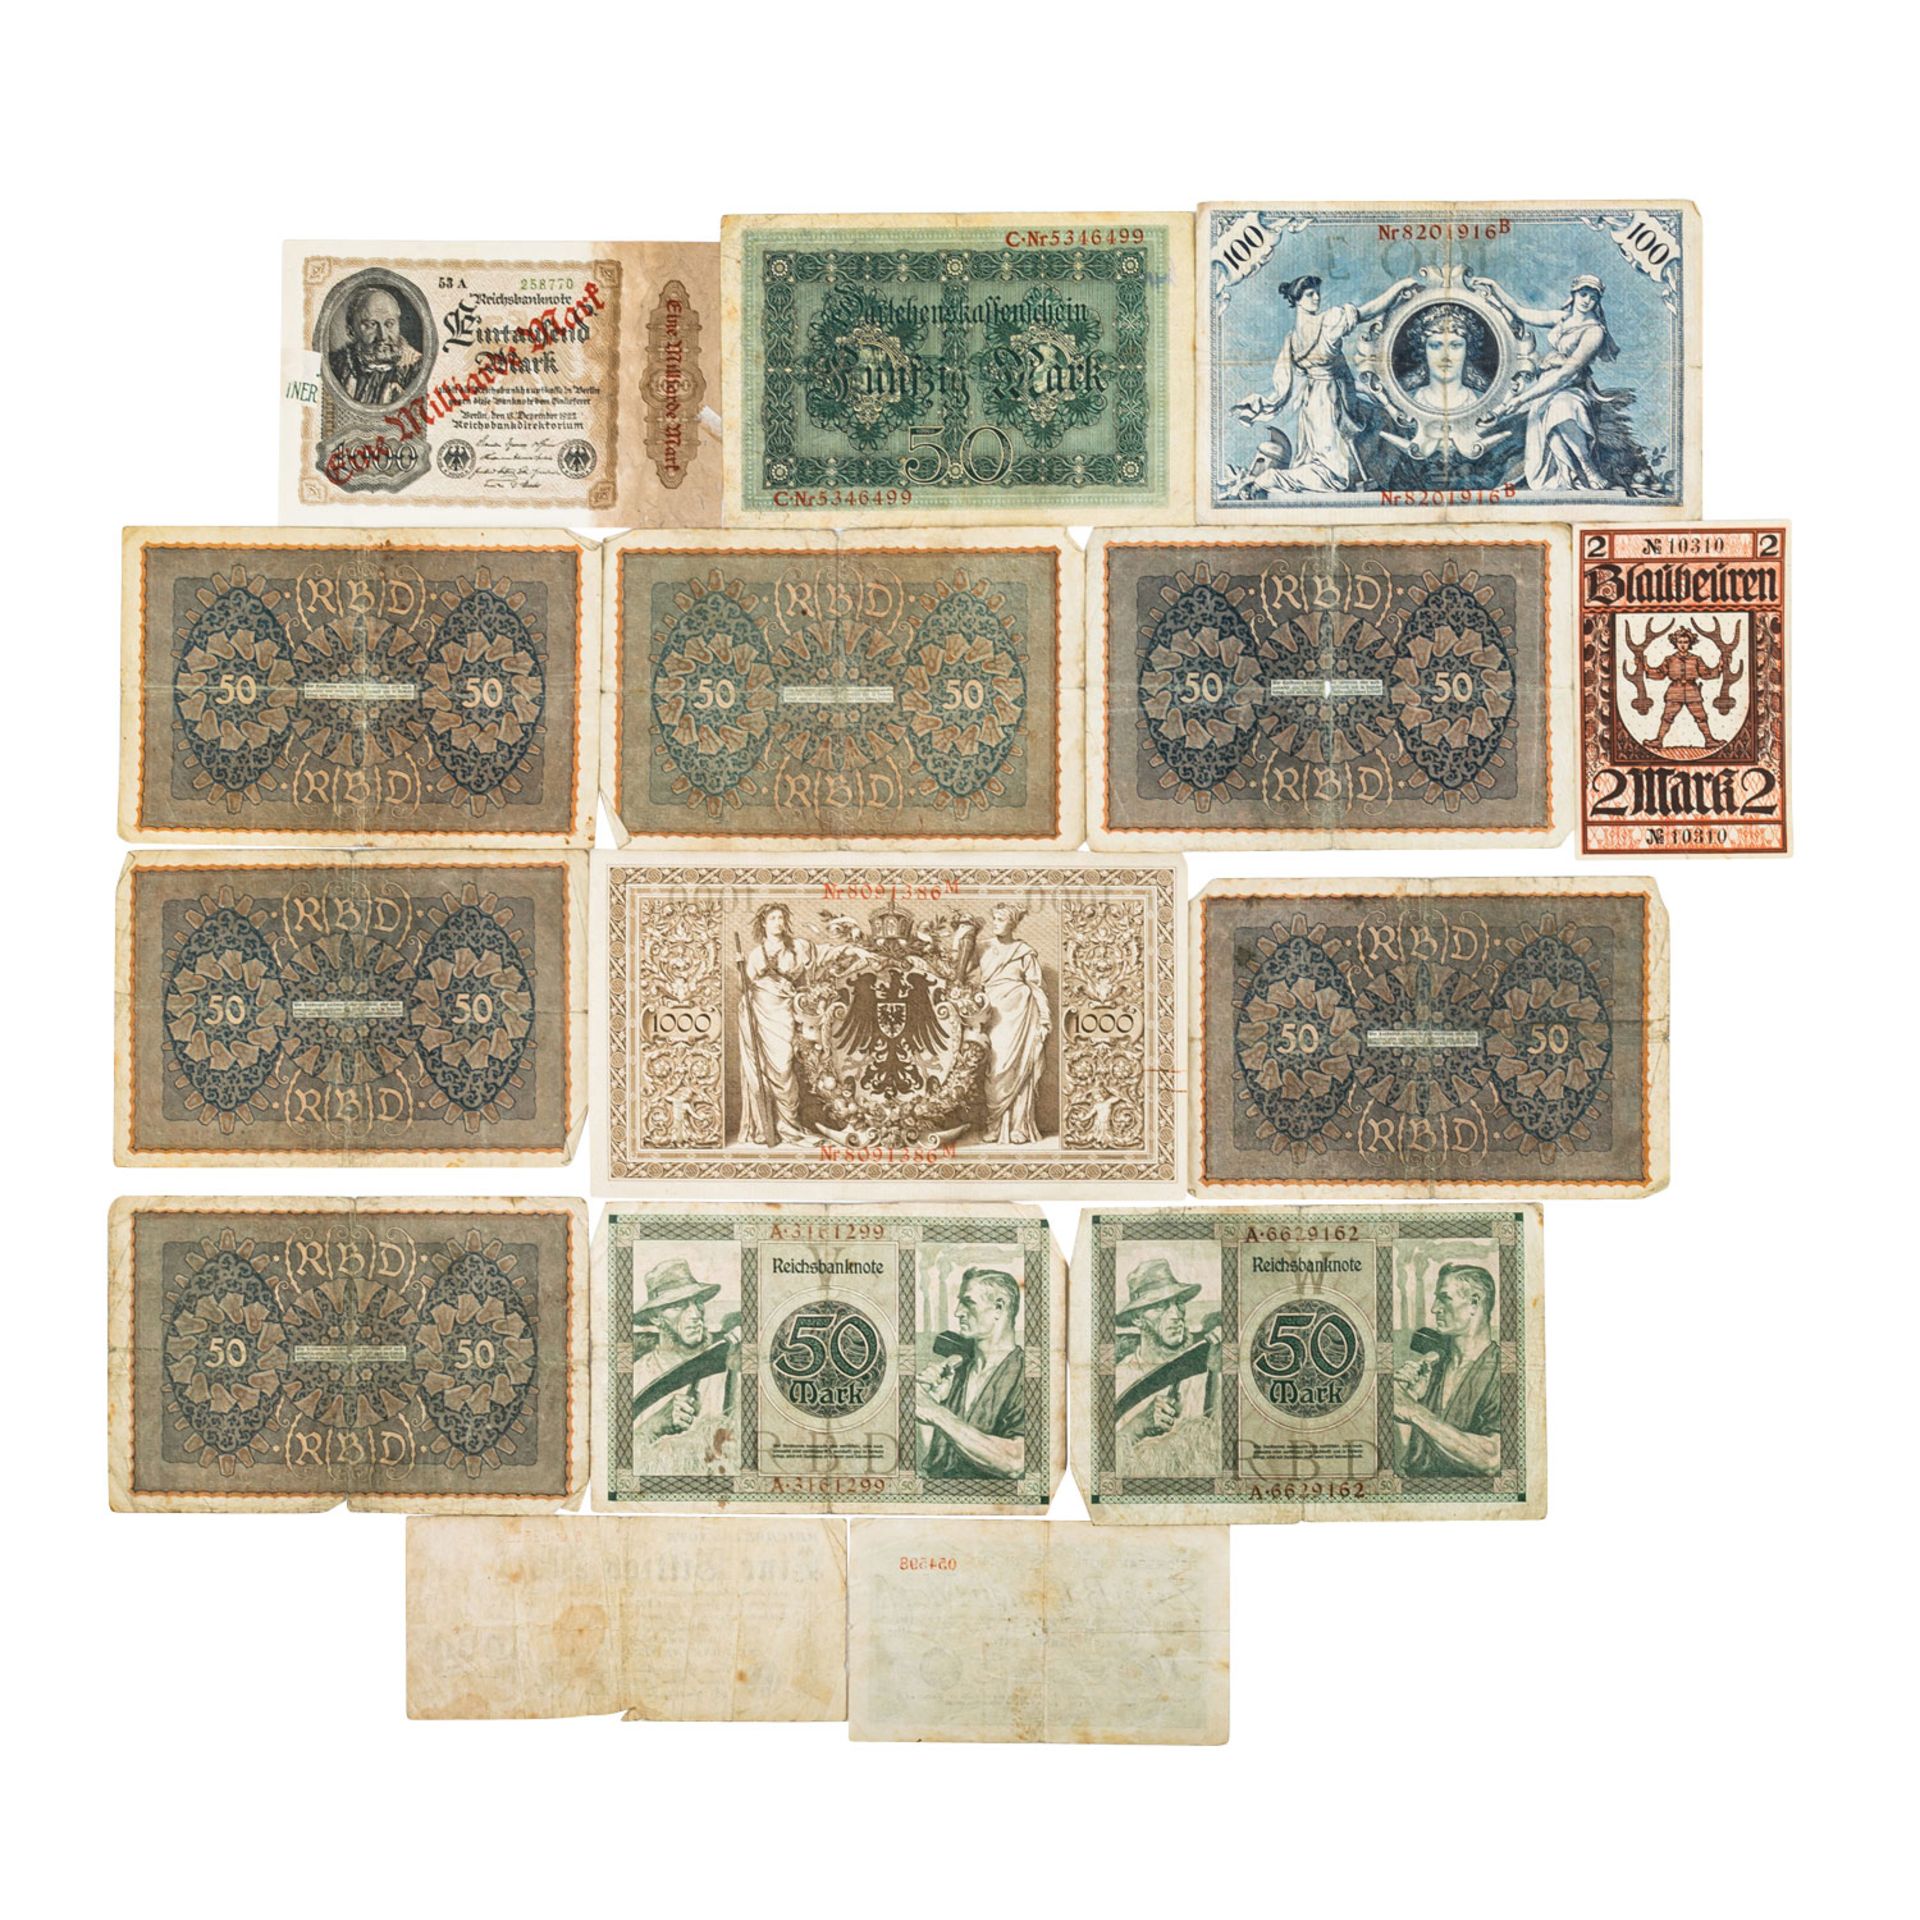 Bündel Banknoten, darunter die gesuchten und besseren Reichsbanknoten< - Bild 2 aus 2